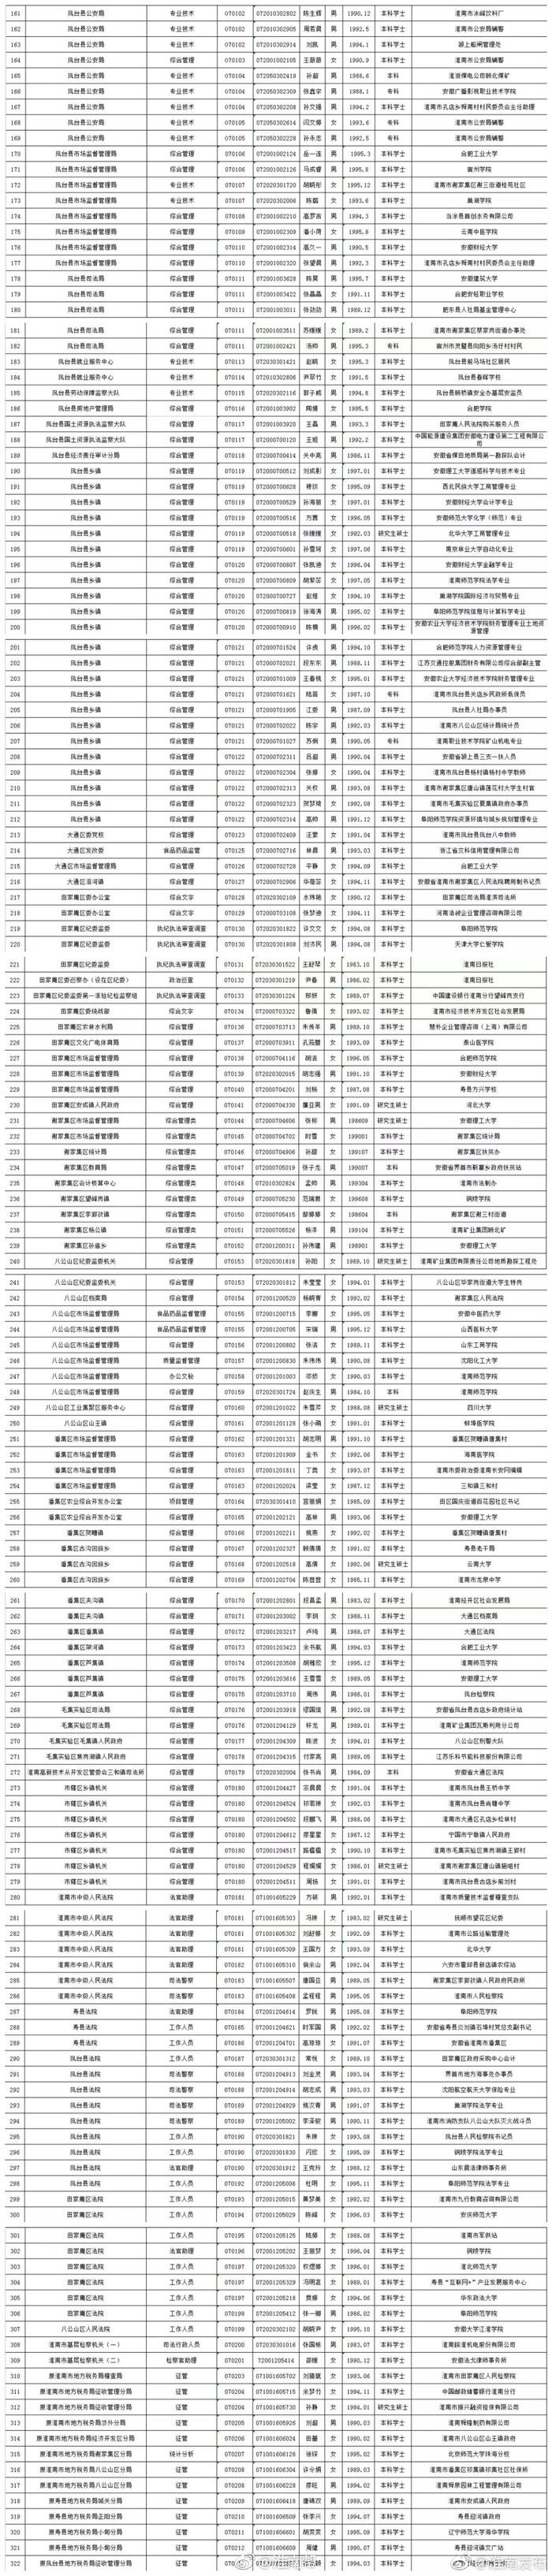 淮南市2018年拟录用人员名单公示（第一批）